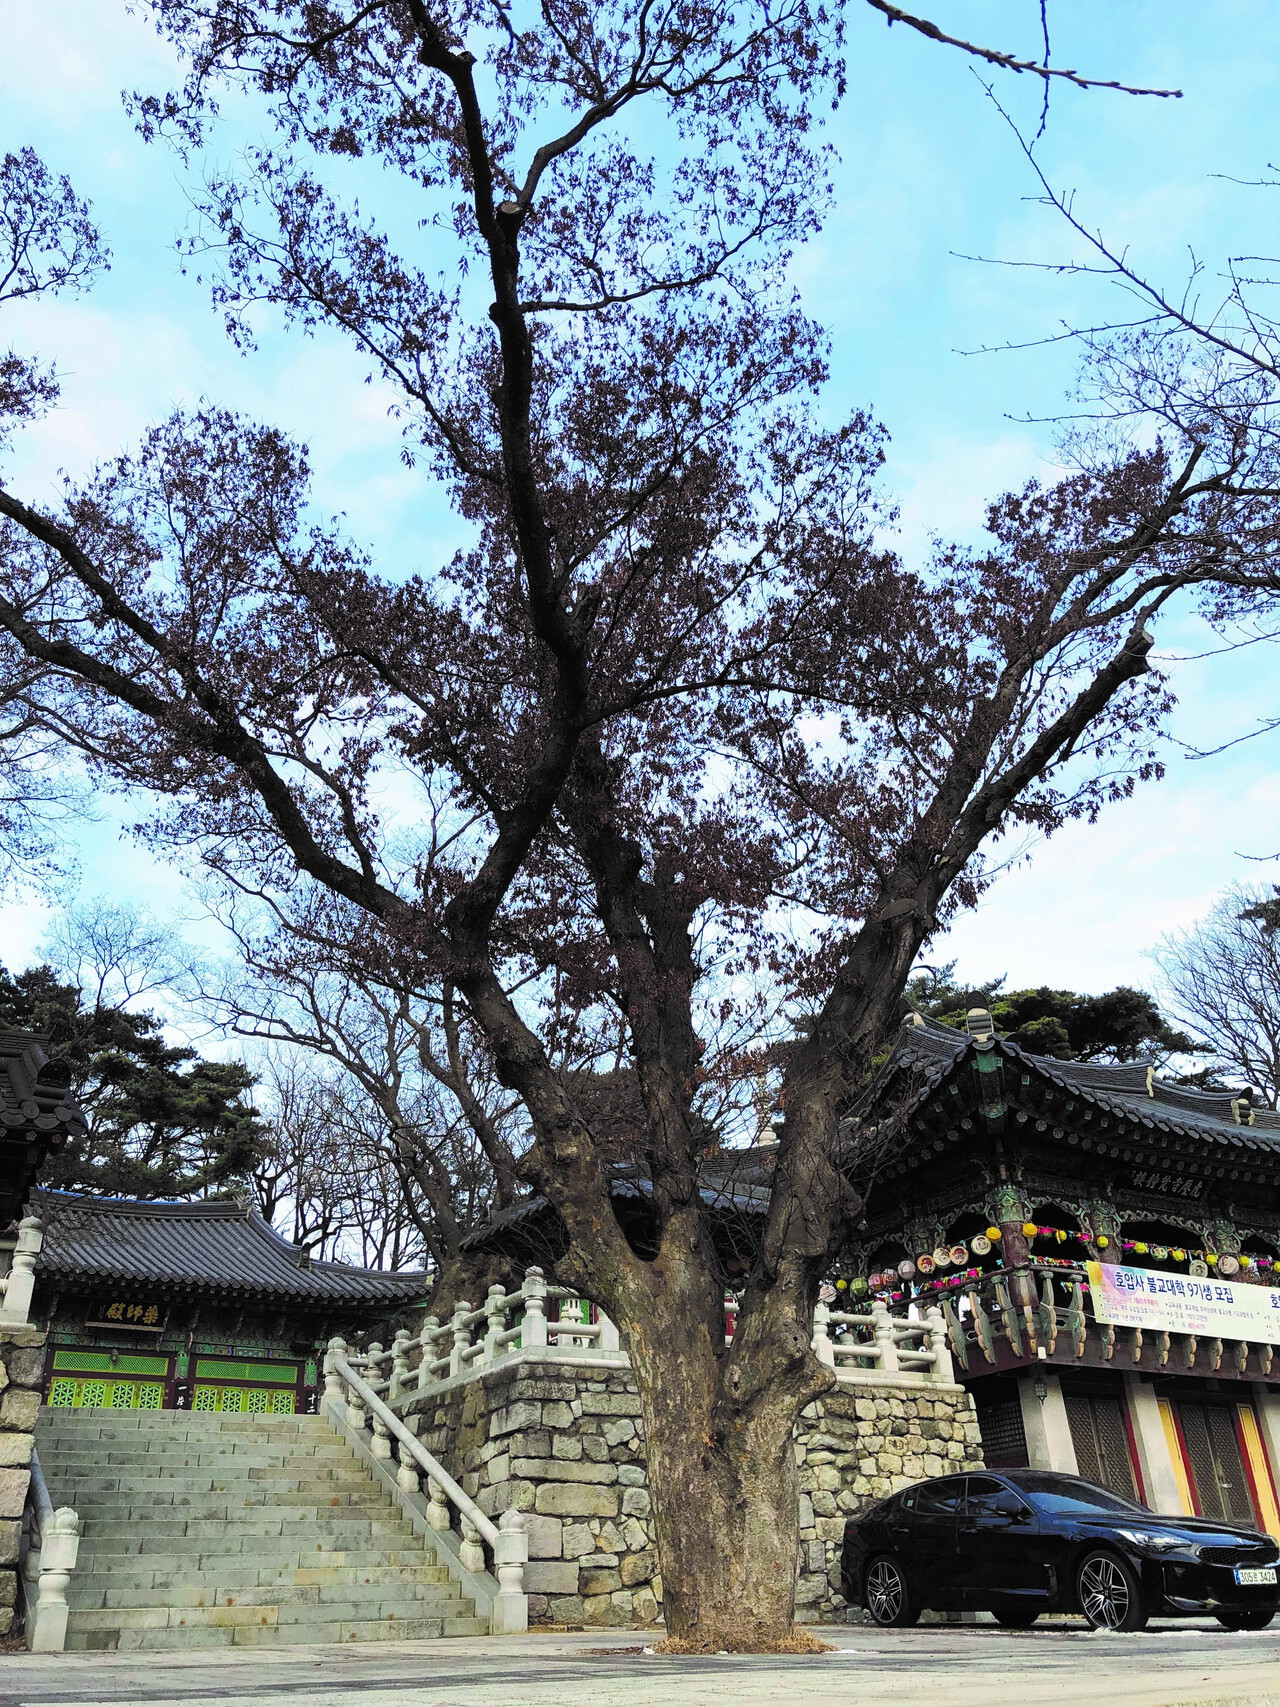 ▲ 느티나무는 낮은 구릉지 및 평지에서 잘 자라는 나무다. 사진은 서울 호압사의 느티나무